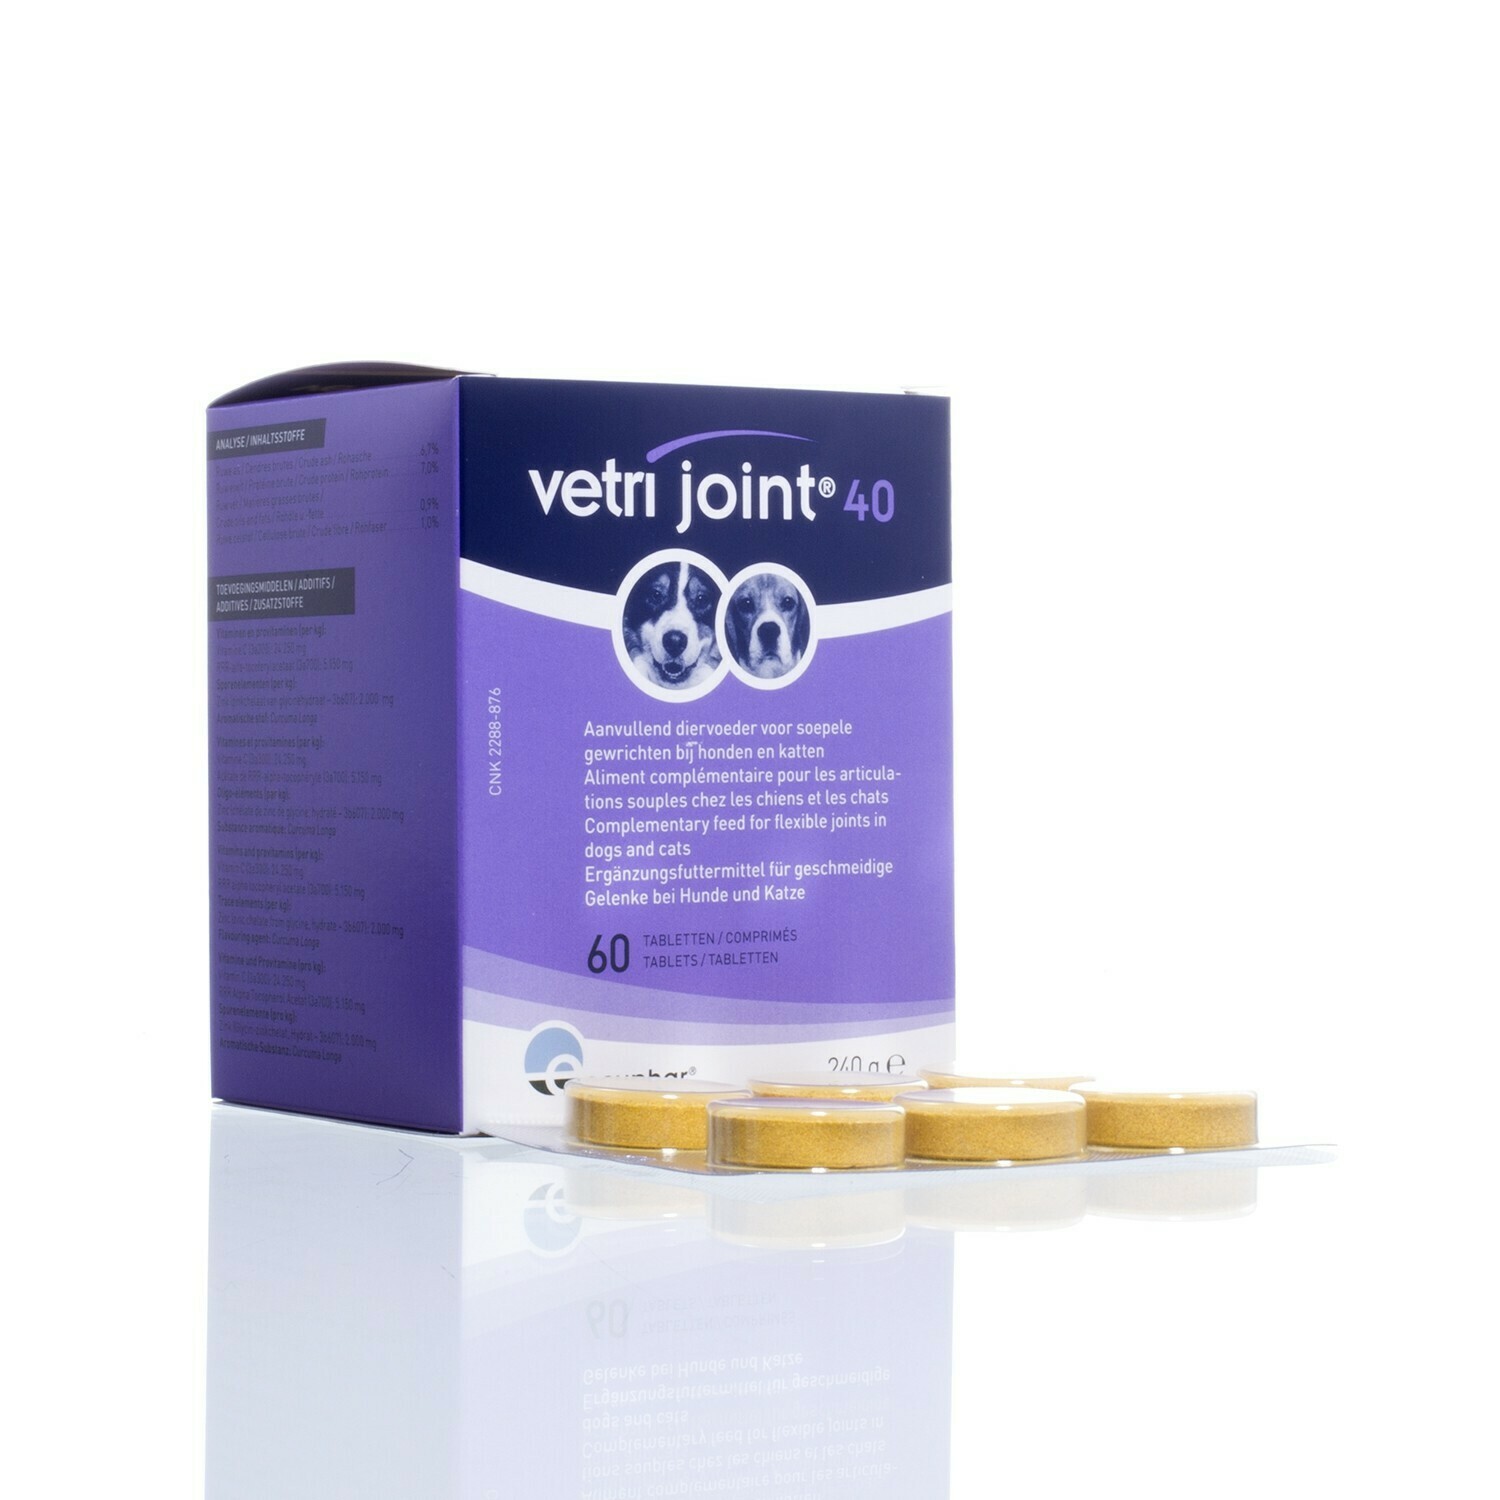 Vetri Joint, Inhoud: Vetri Joint 10 90 Tabletten